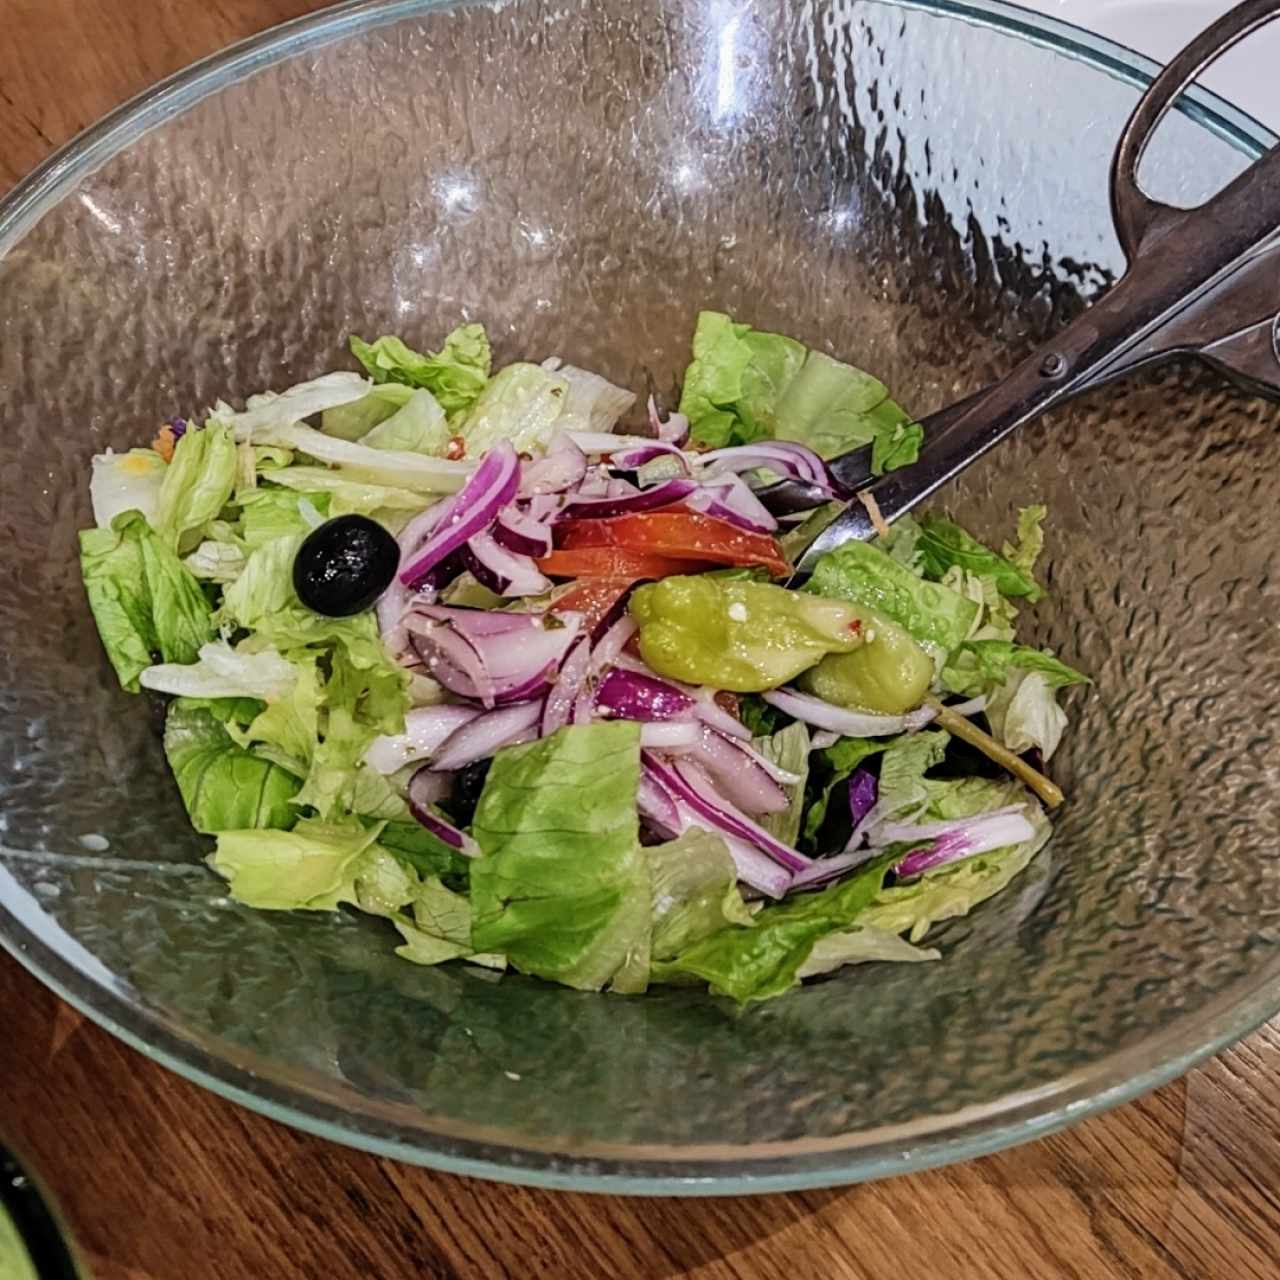 Soup & Salad - Famous House Salad